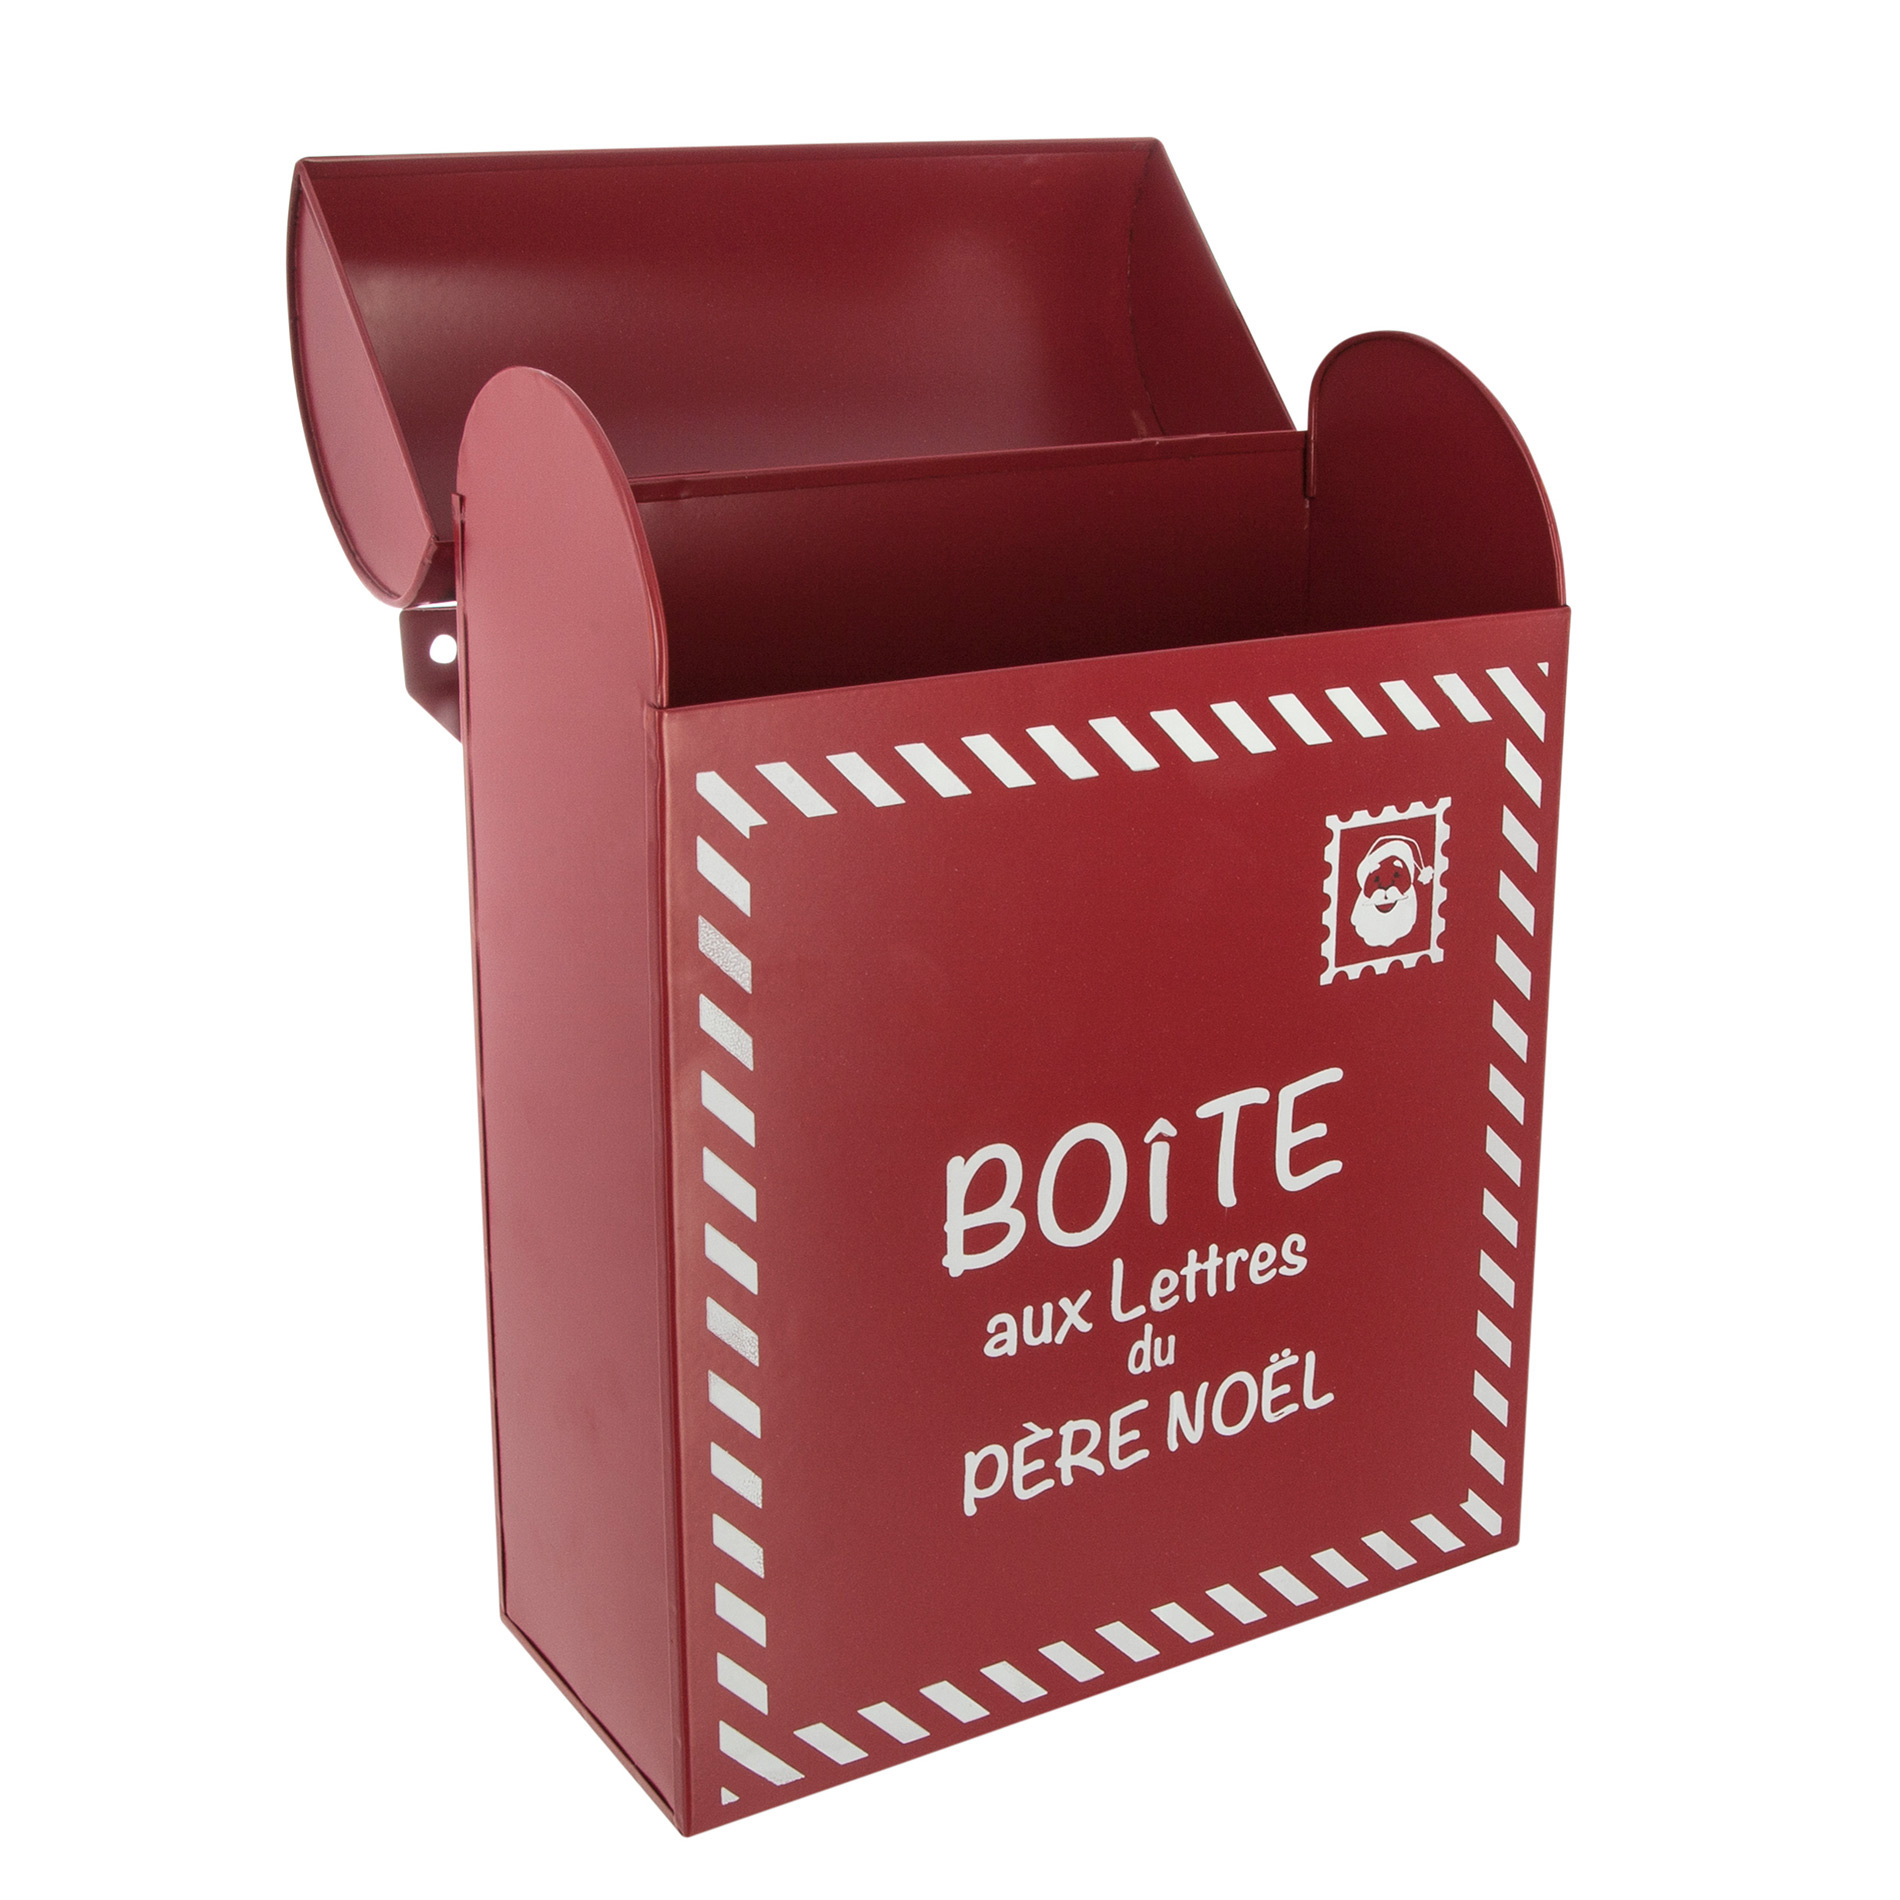 For Living - Décoration de Noël Boîte aux lettres en métal, rouge, 12 po